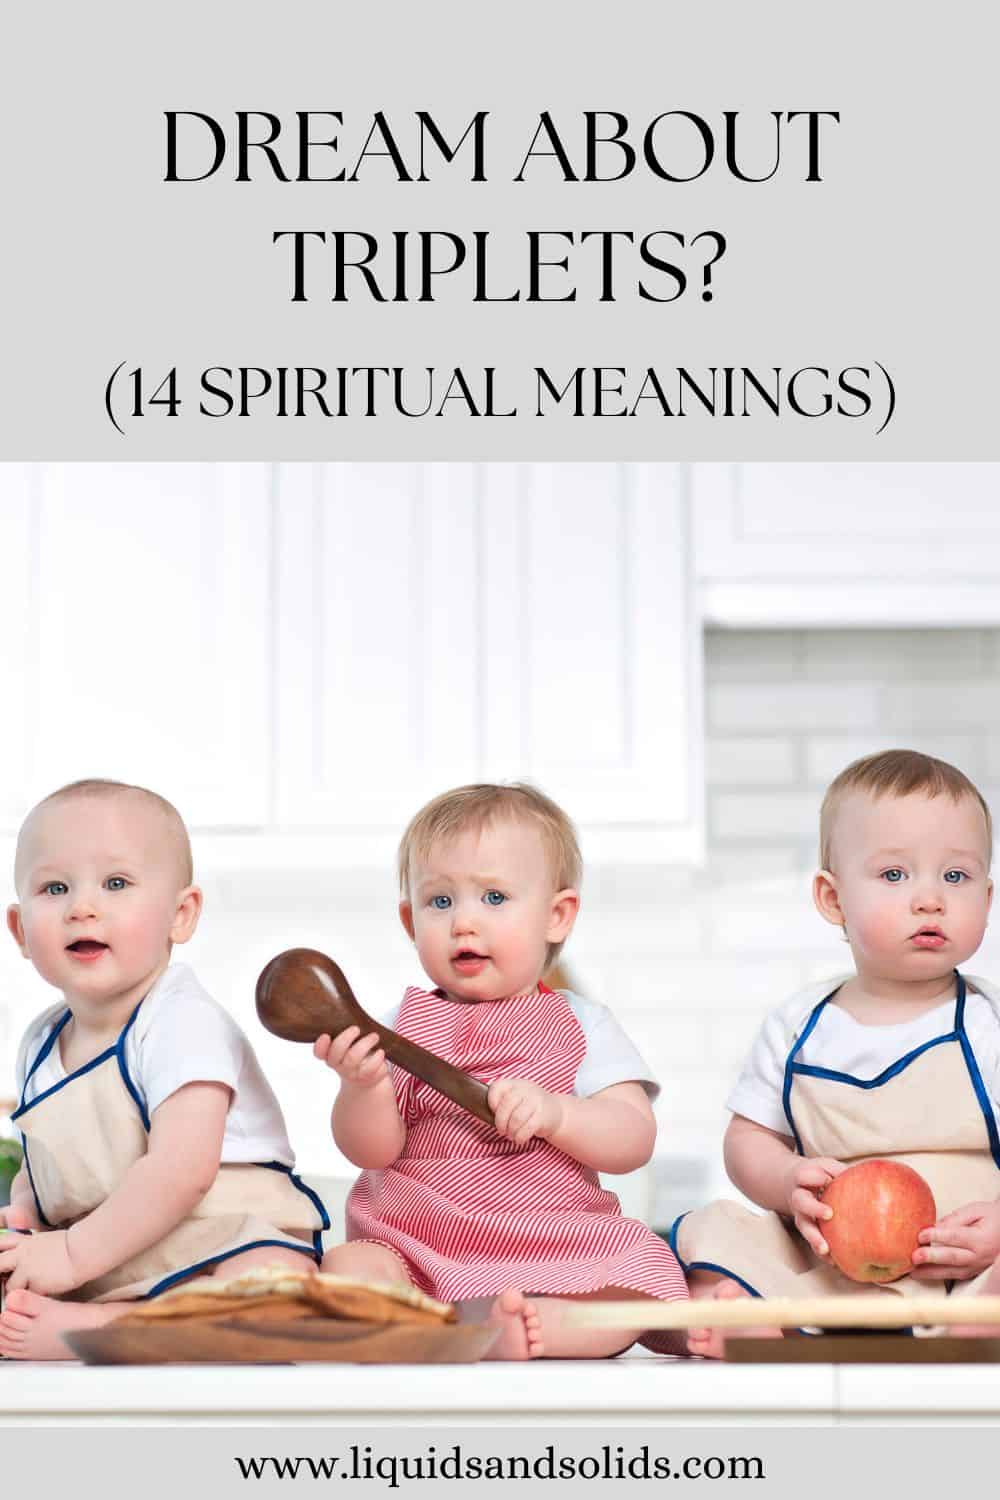  ຝັນກ່ຽວກັບ triplets? (14 ຄວາມ​ຫມາຍ​ທາງ​ວິນ​ຍານ​)